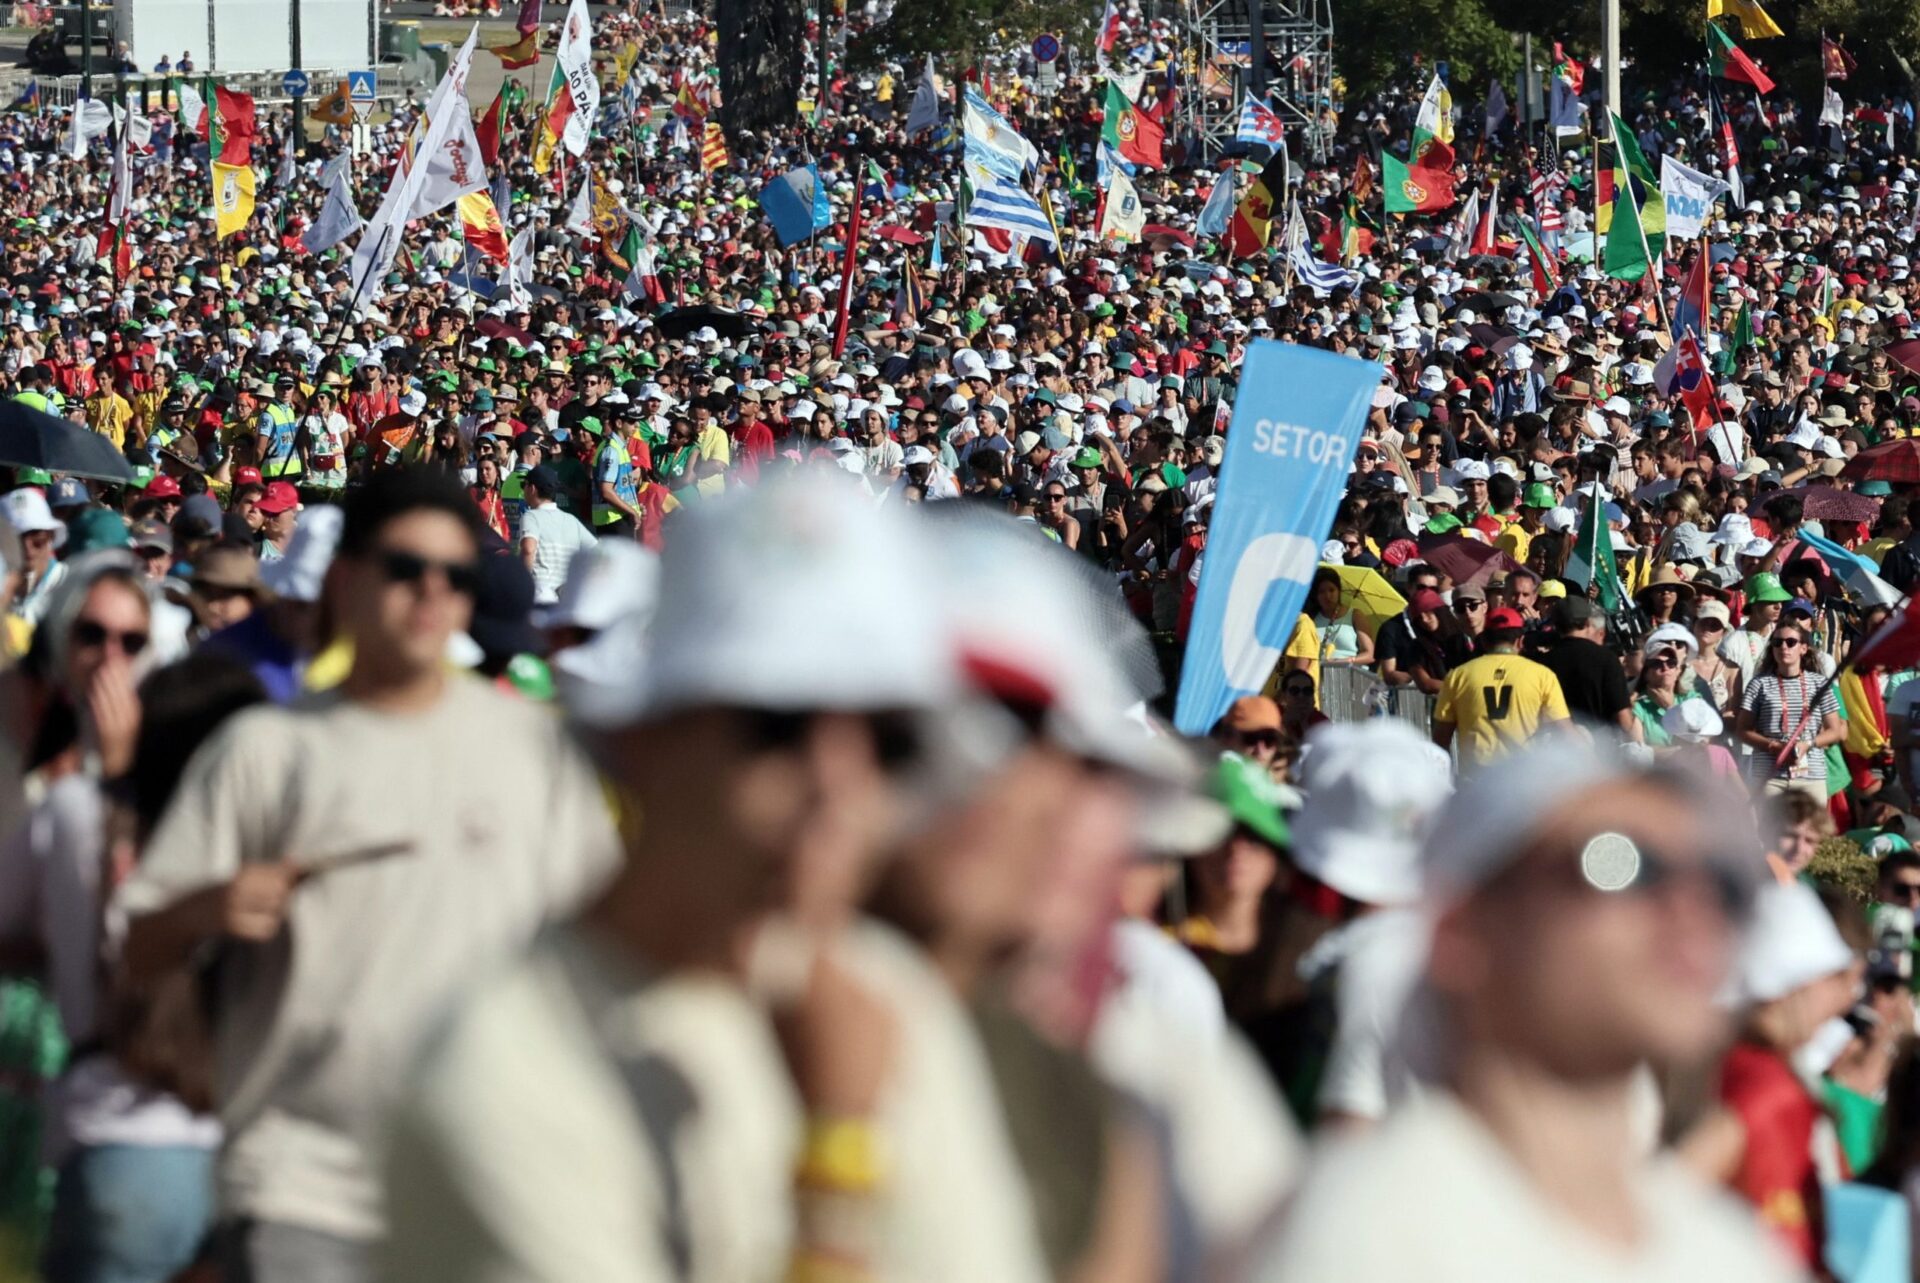 Cerca de 800 mil pessoas marcaram presença no Parque Eduardo VII para a JMJ